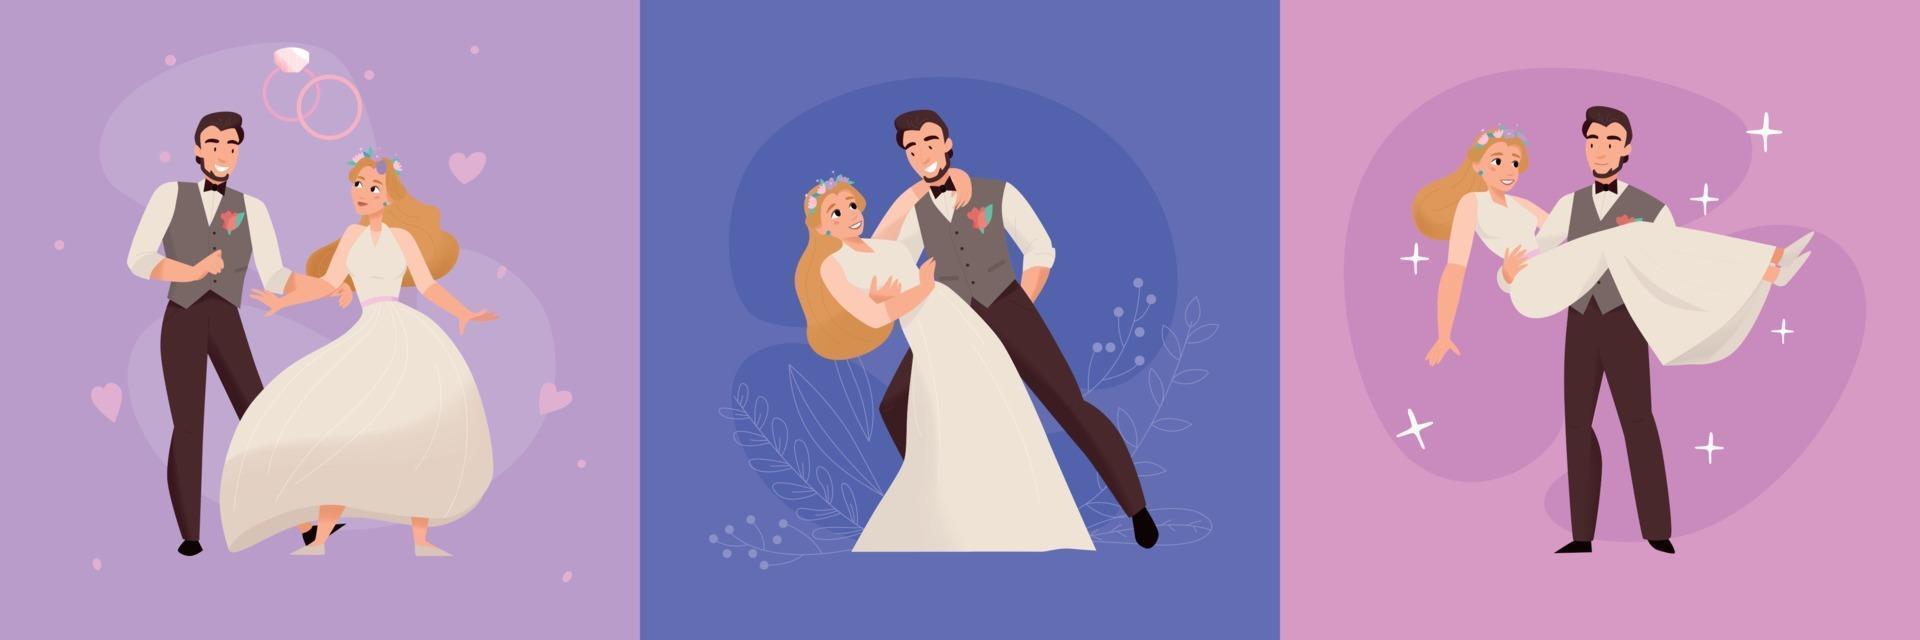 Wedding Marriage Concept Design vector